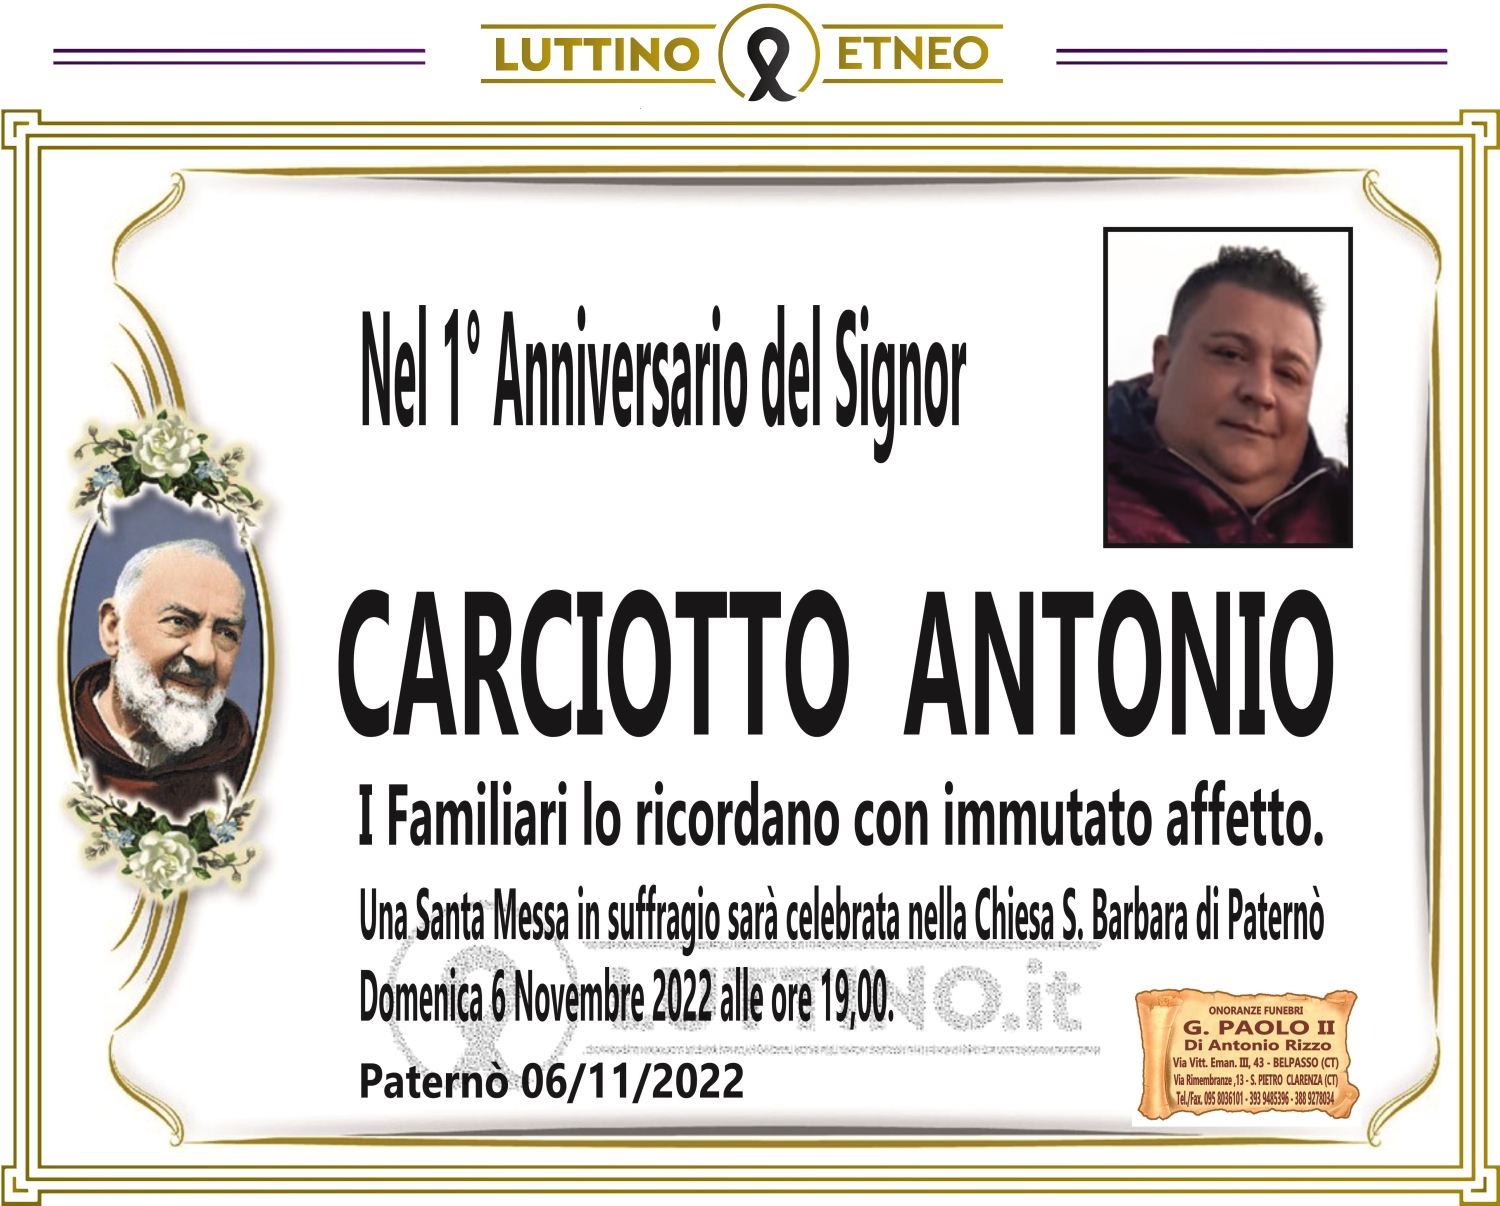 Antonio Carciotto